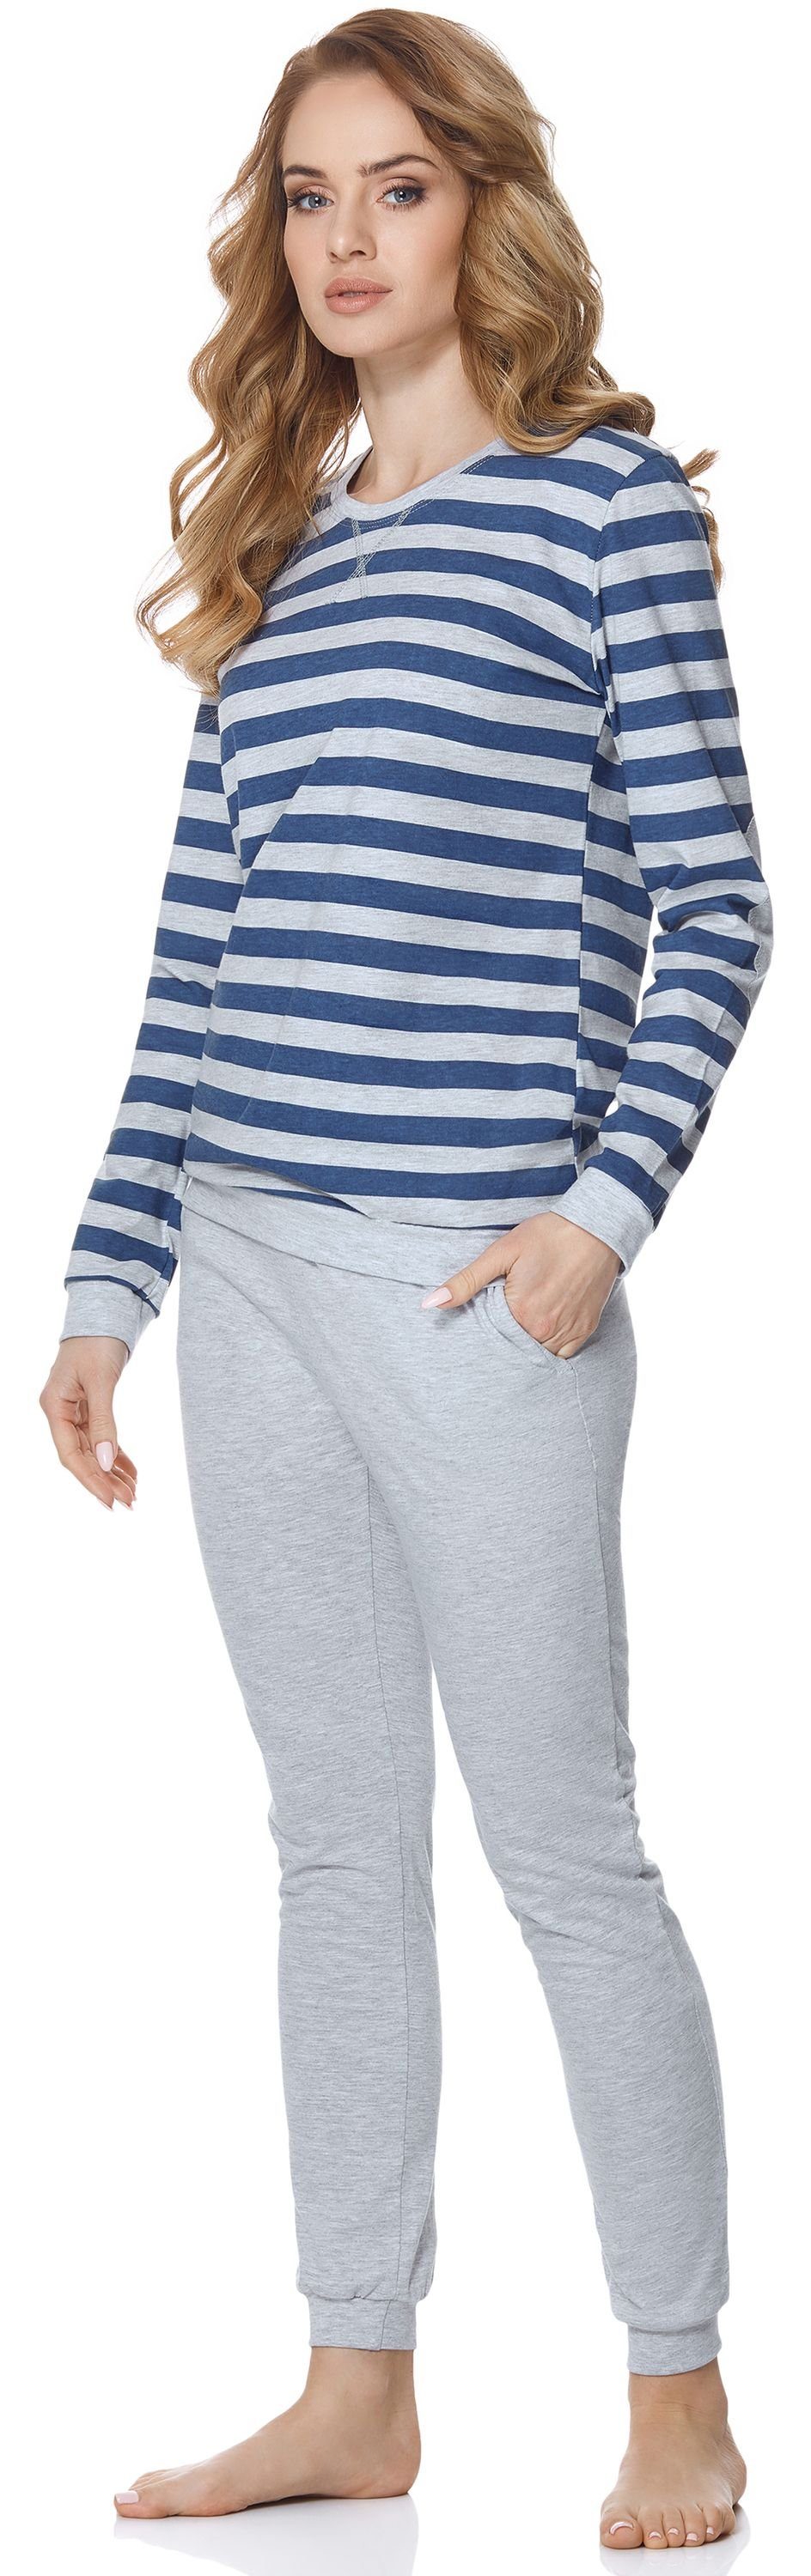 Melange/Jeans Schlafanzug Merry Damen Style Schlafanzug MS10-107